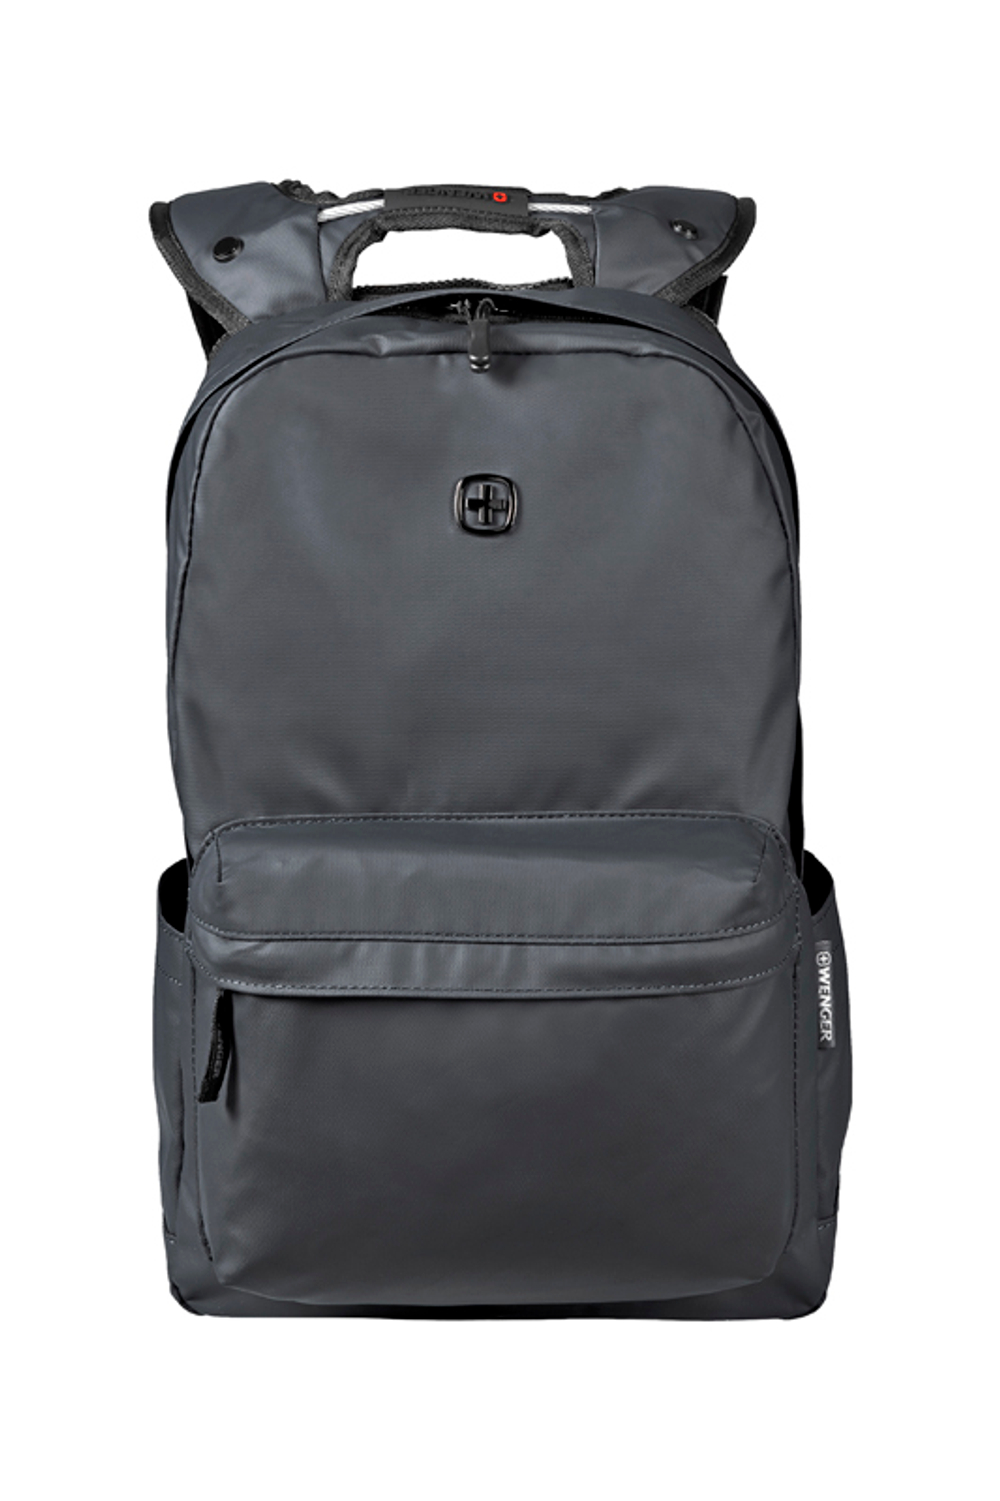 Городской рюкзак чёрный с водоотталкивающим покрытием (18 л) WENGER Photon 605032